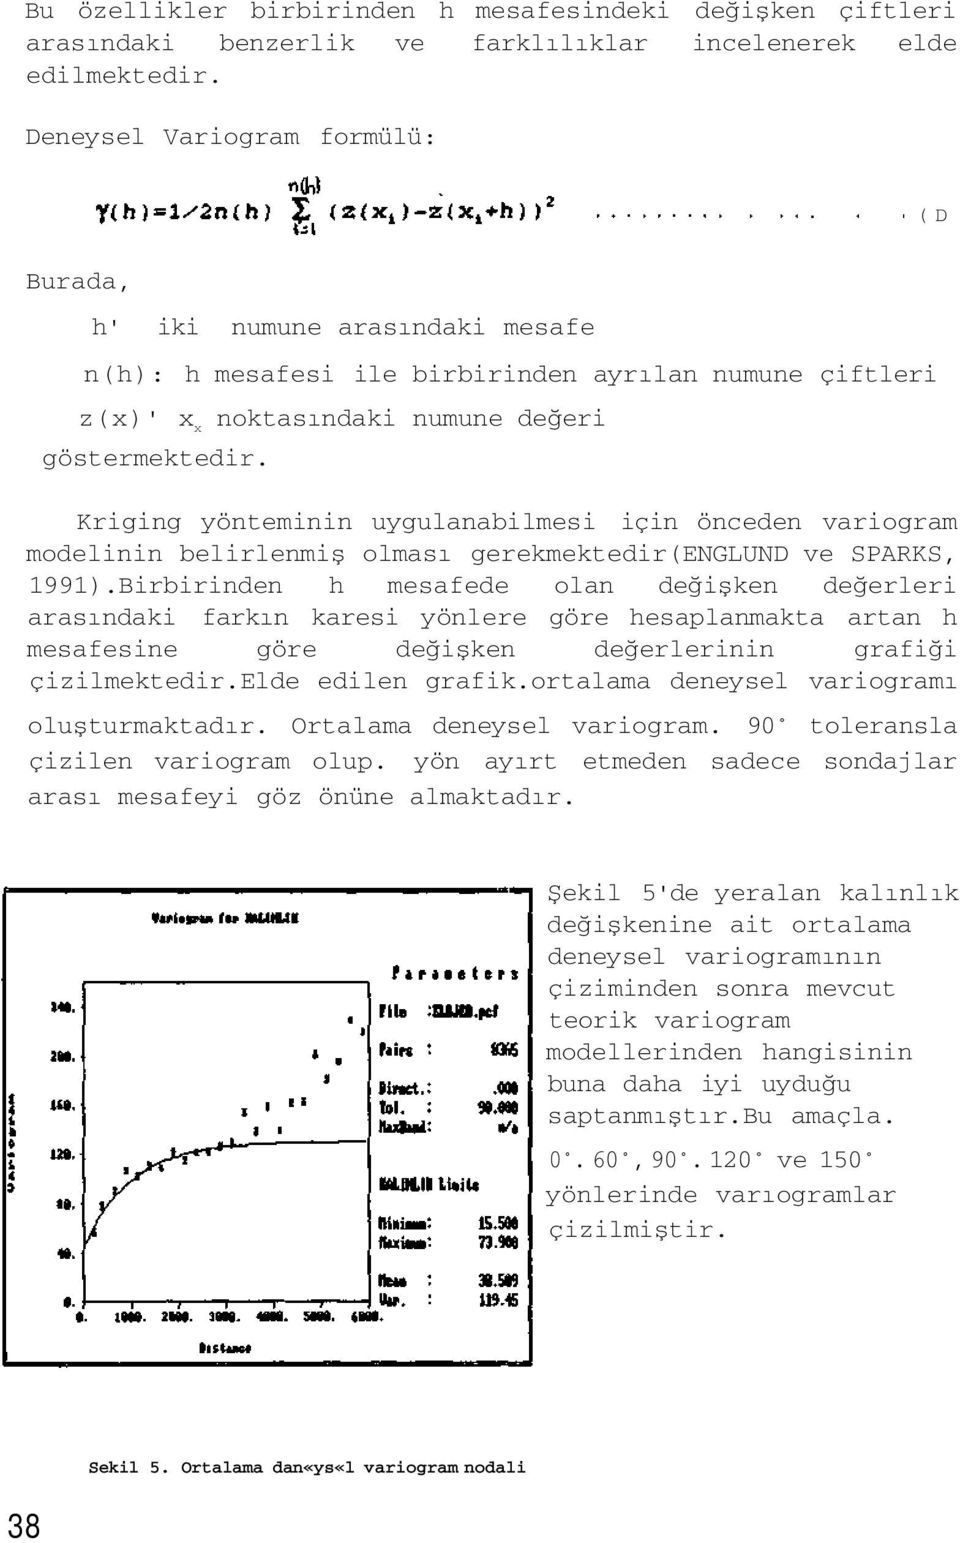 Kriging yönteminin uygulanabilmesi için önceden variogram modelinin belirlenmiş olması gerekmektedir(englund ve SPARKS, 1991).